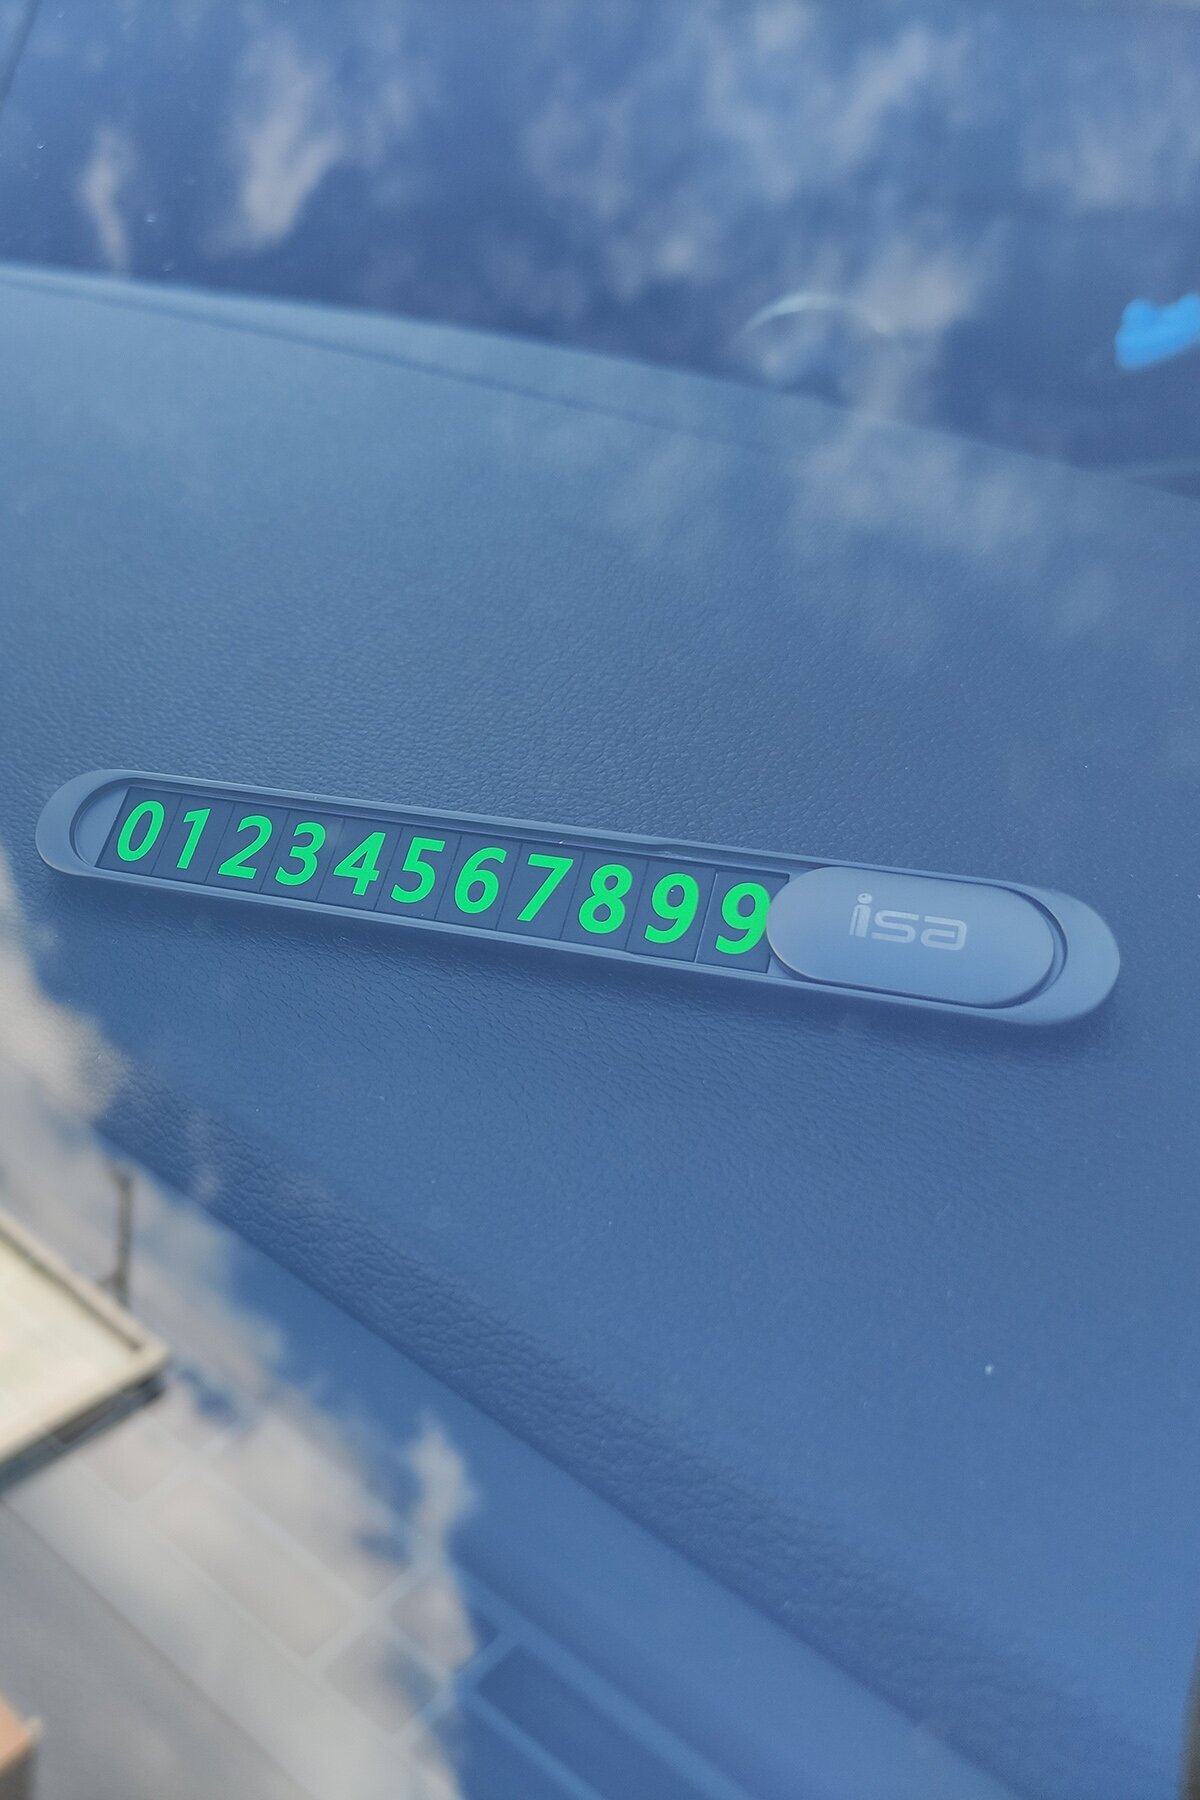 Автовизитка в салон с подсветкой цифр